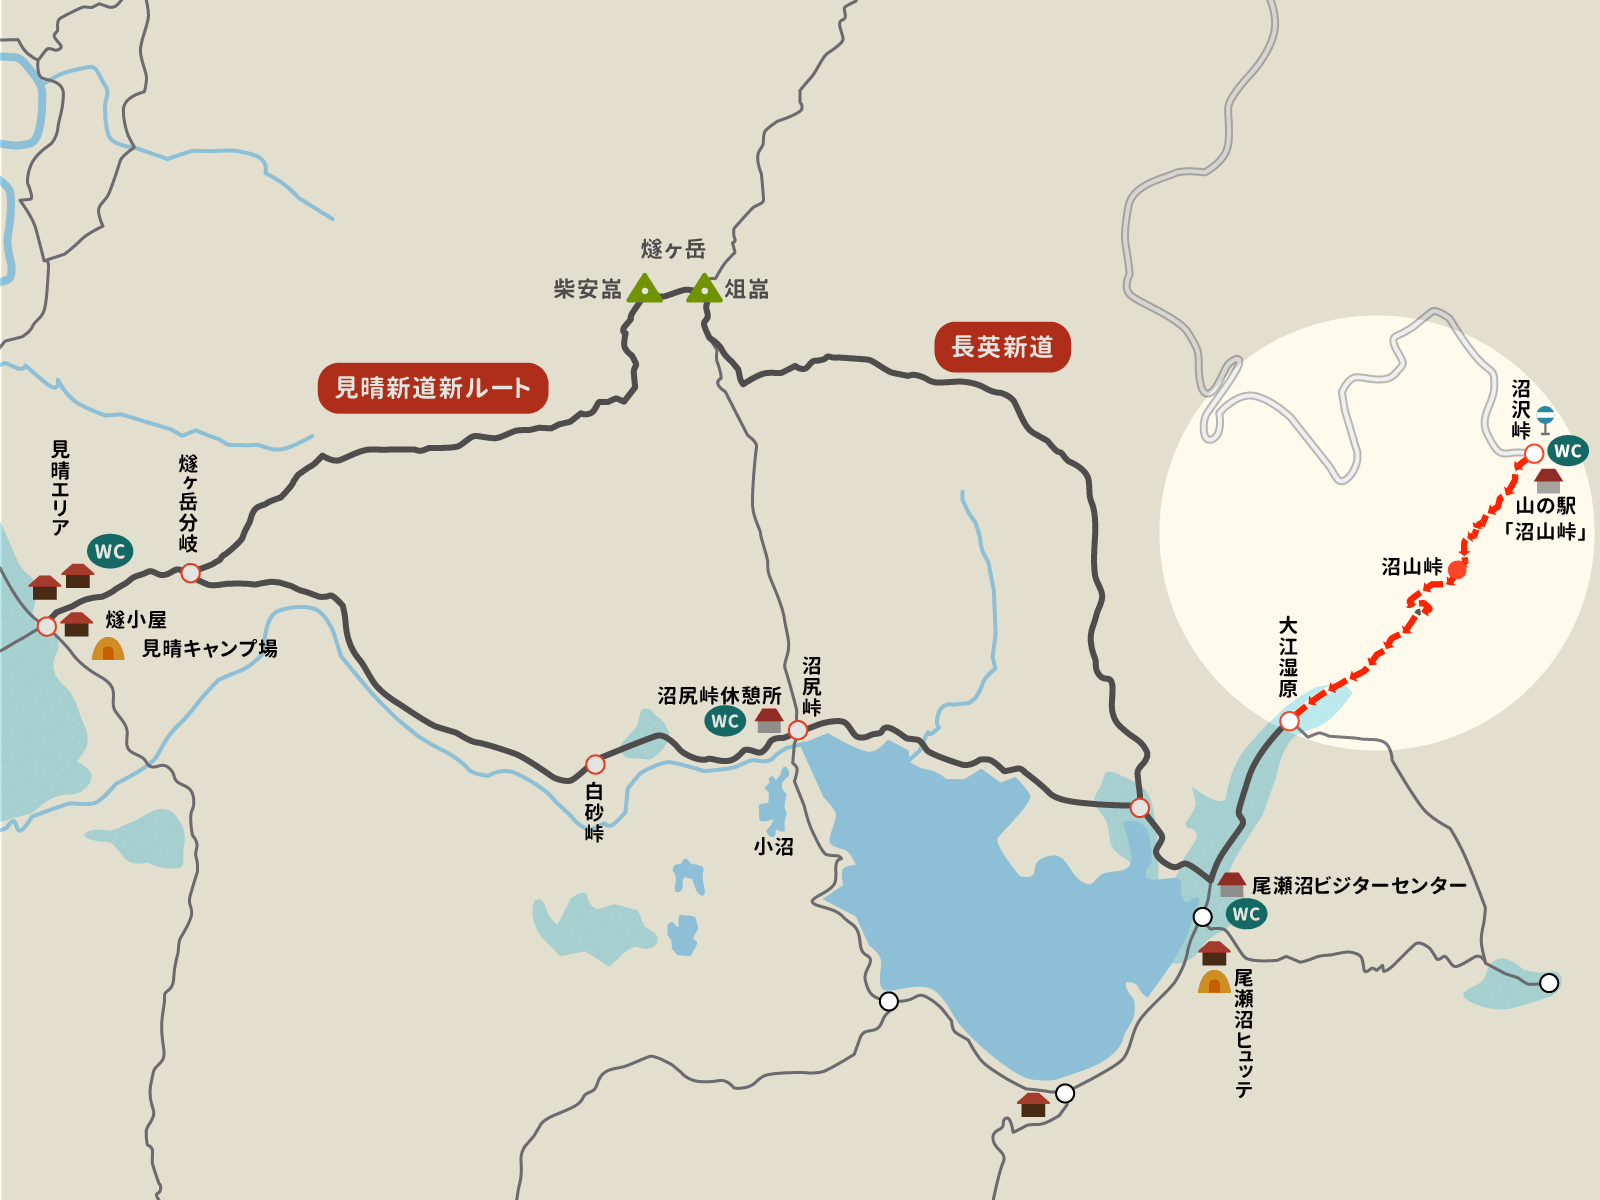 沼沢峠から大江湿原までのイラストマップ